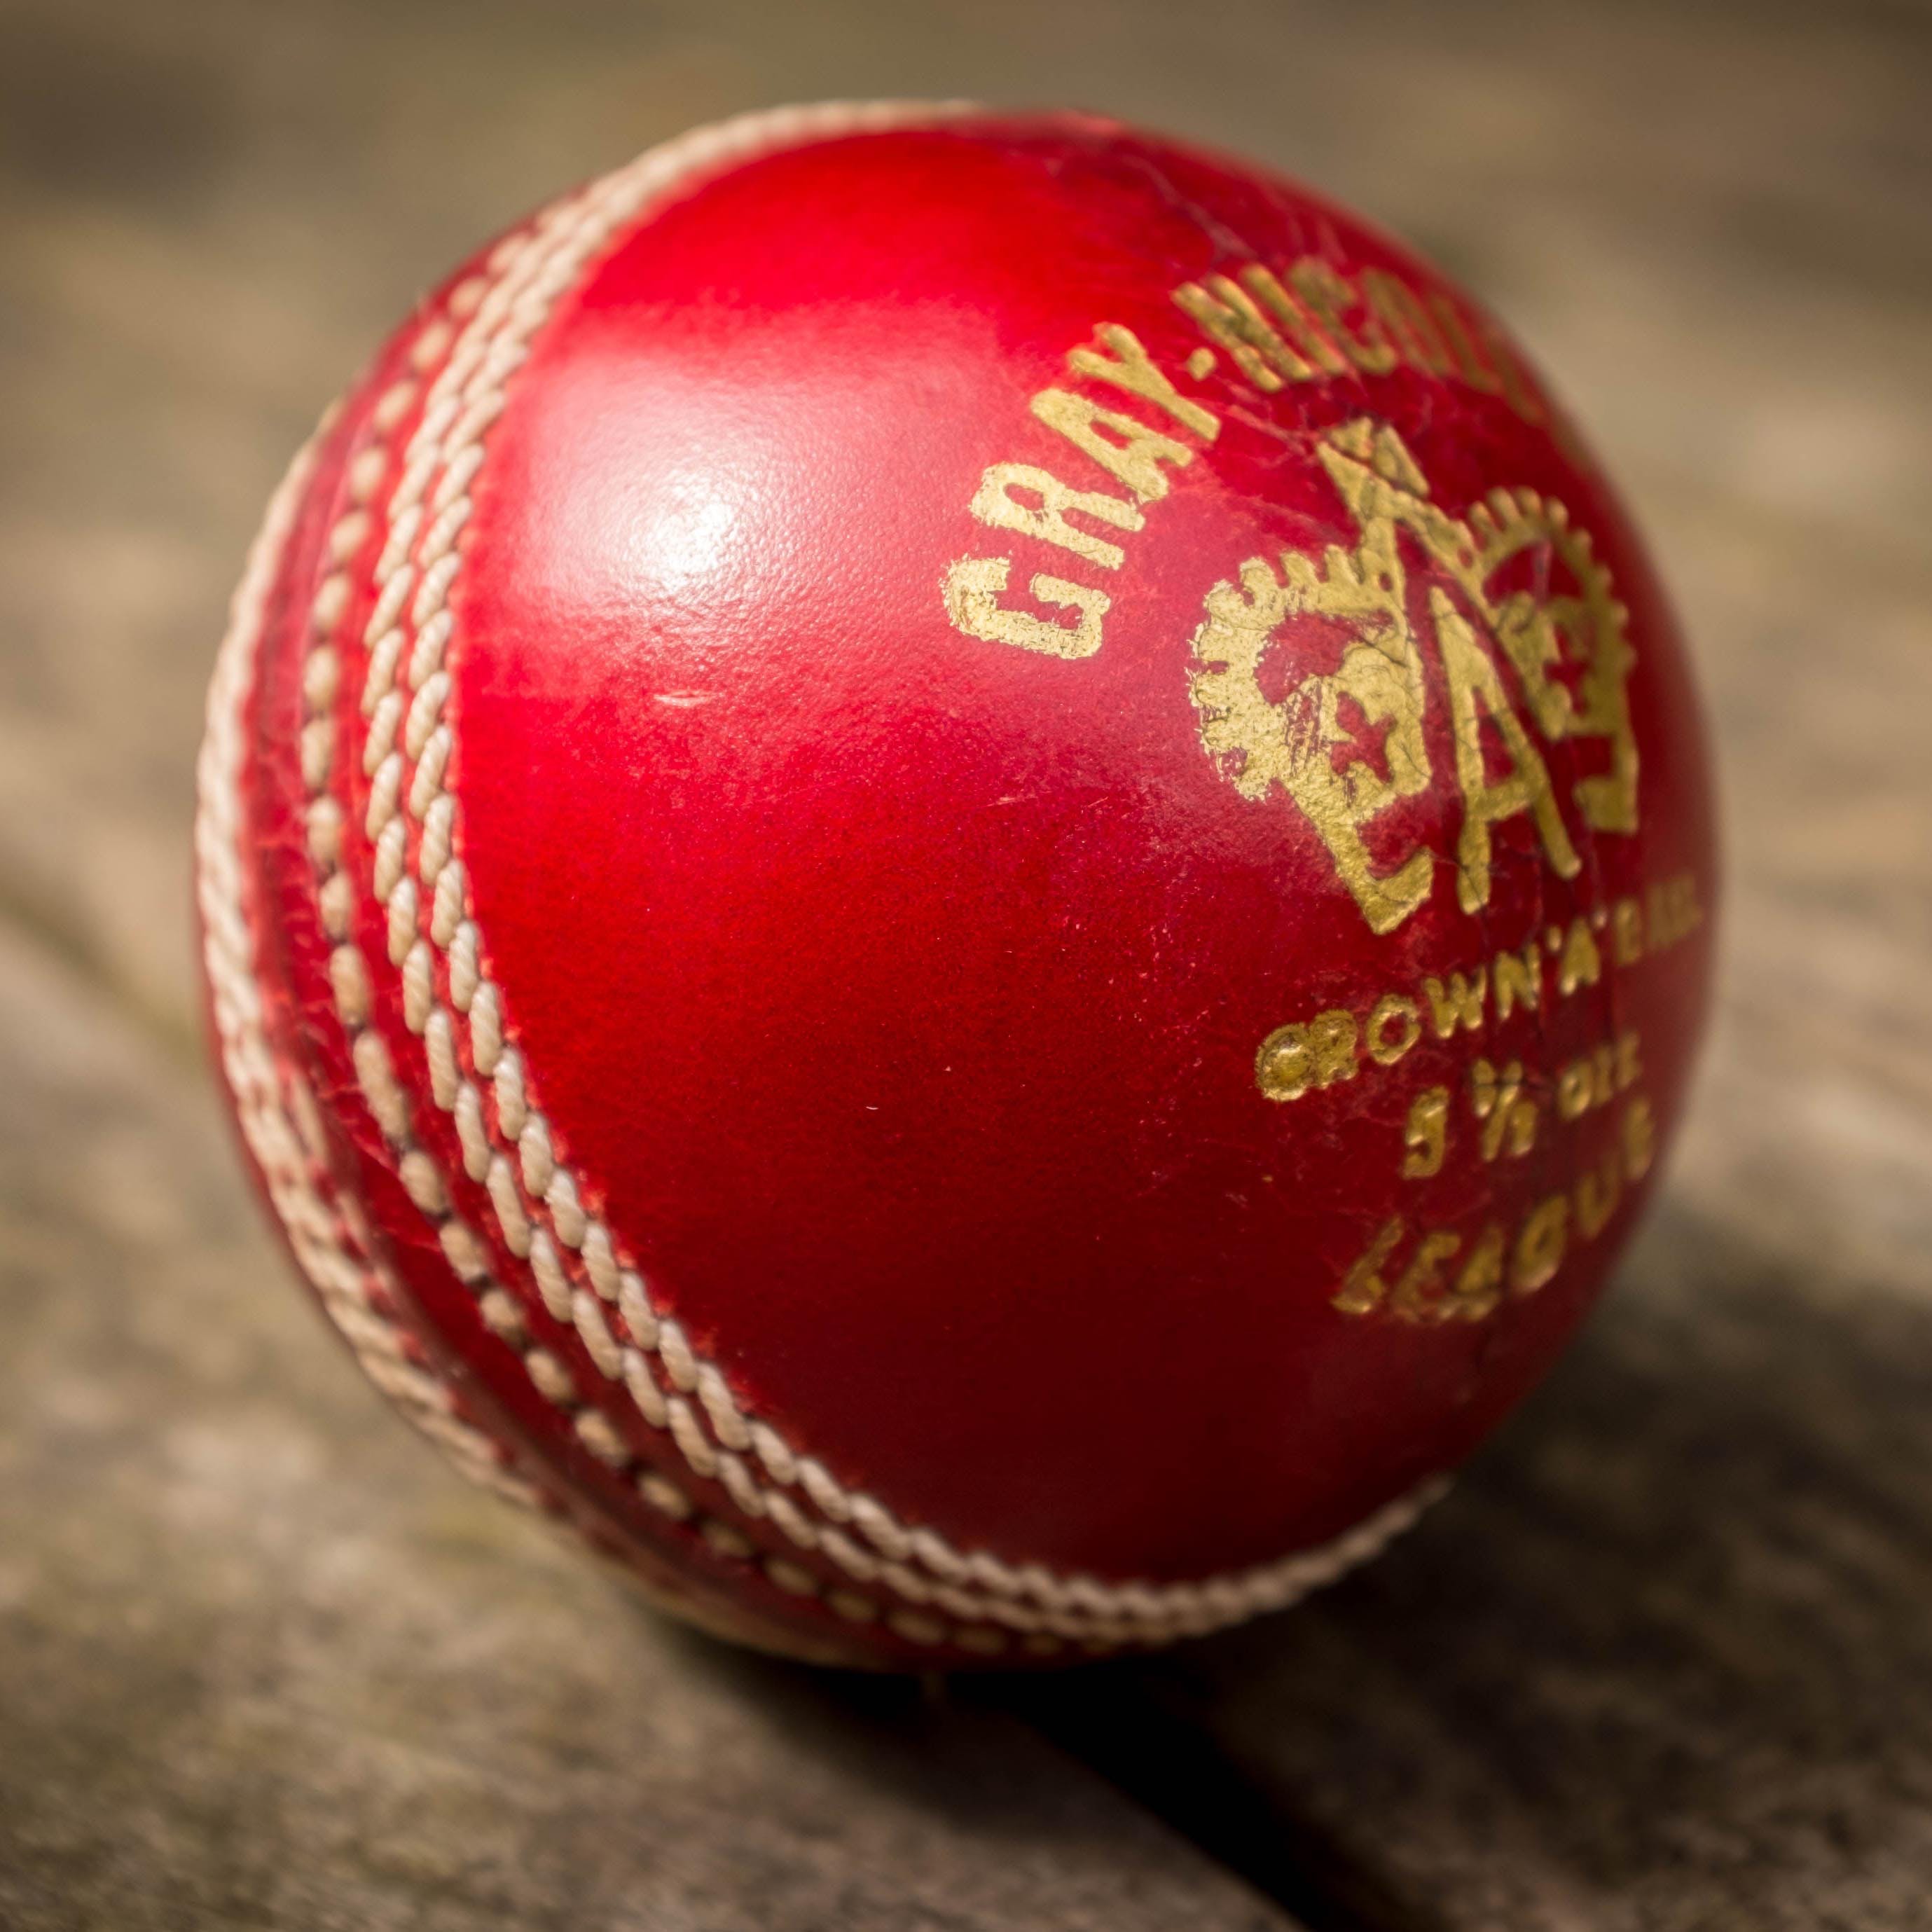 Ball,Cricket ball,Ball,Ball game,Bat-and-ball games,Cricket,Sports equipment,Team sport,Sports